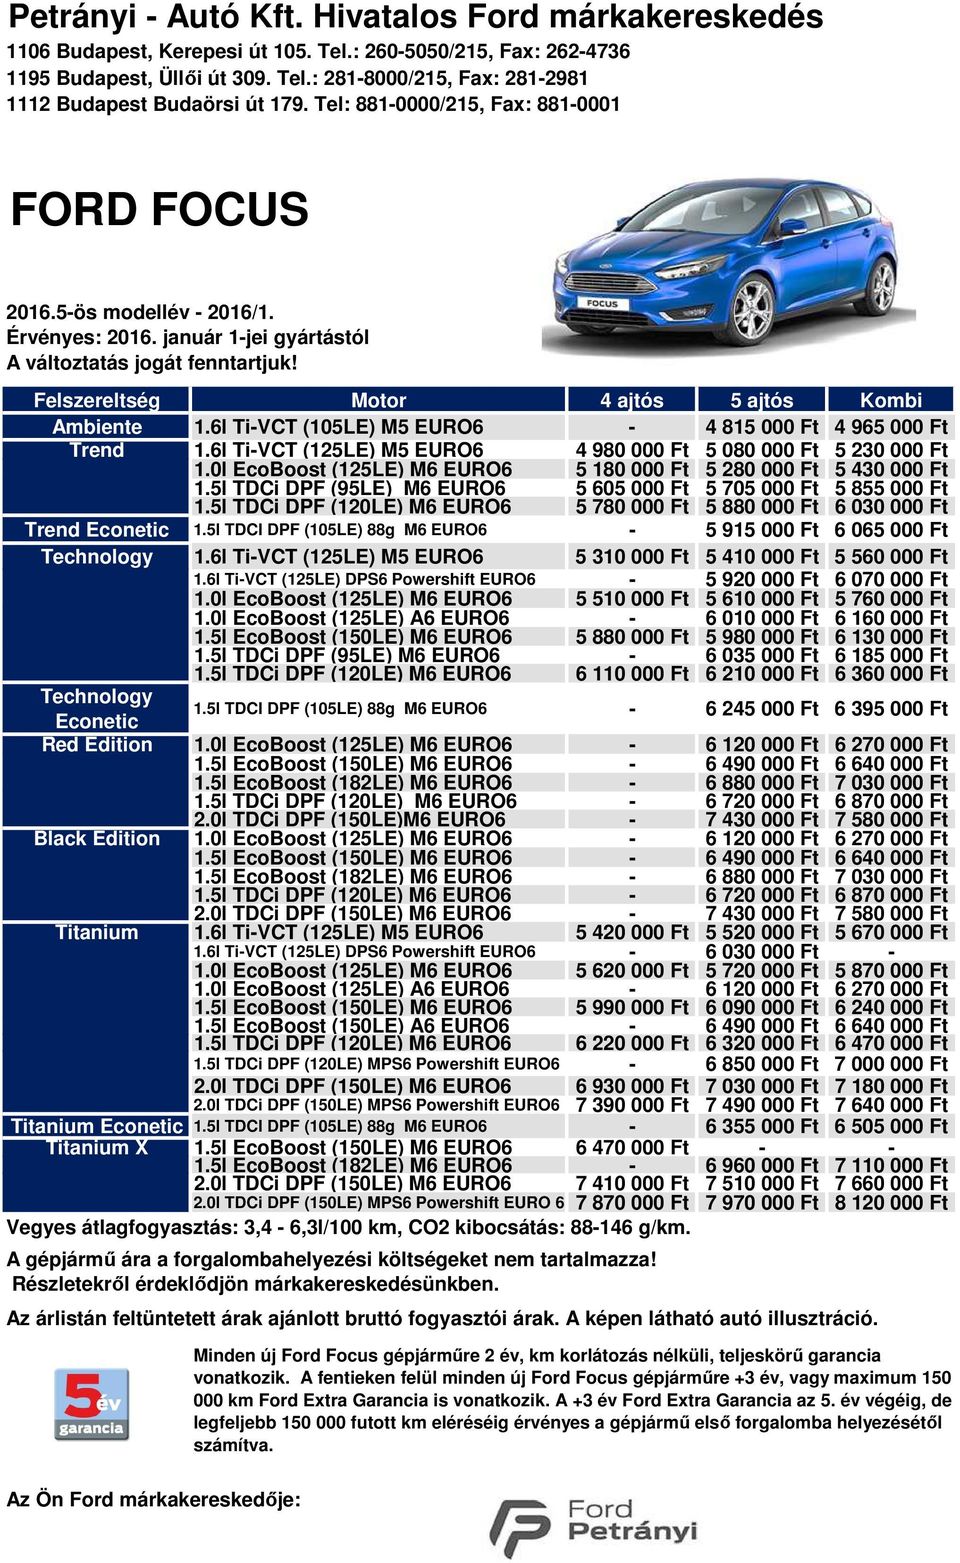 Petrányi - Autó Kft. Hivatalos Ford márkakereskedés - PDF Ingyenes letöltés